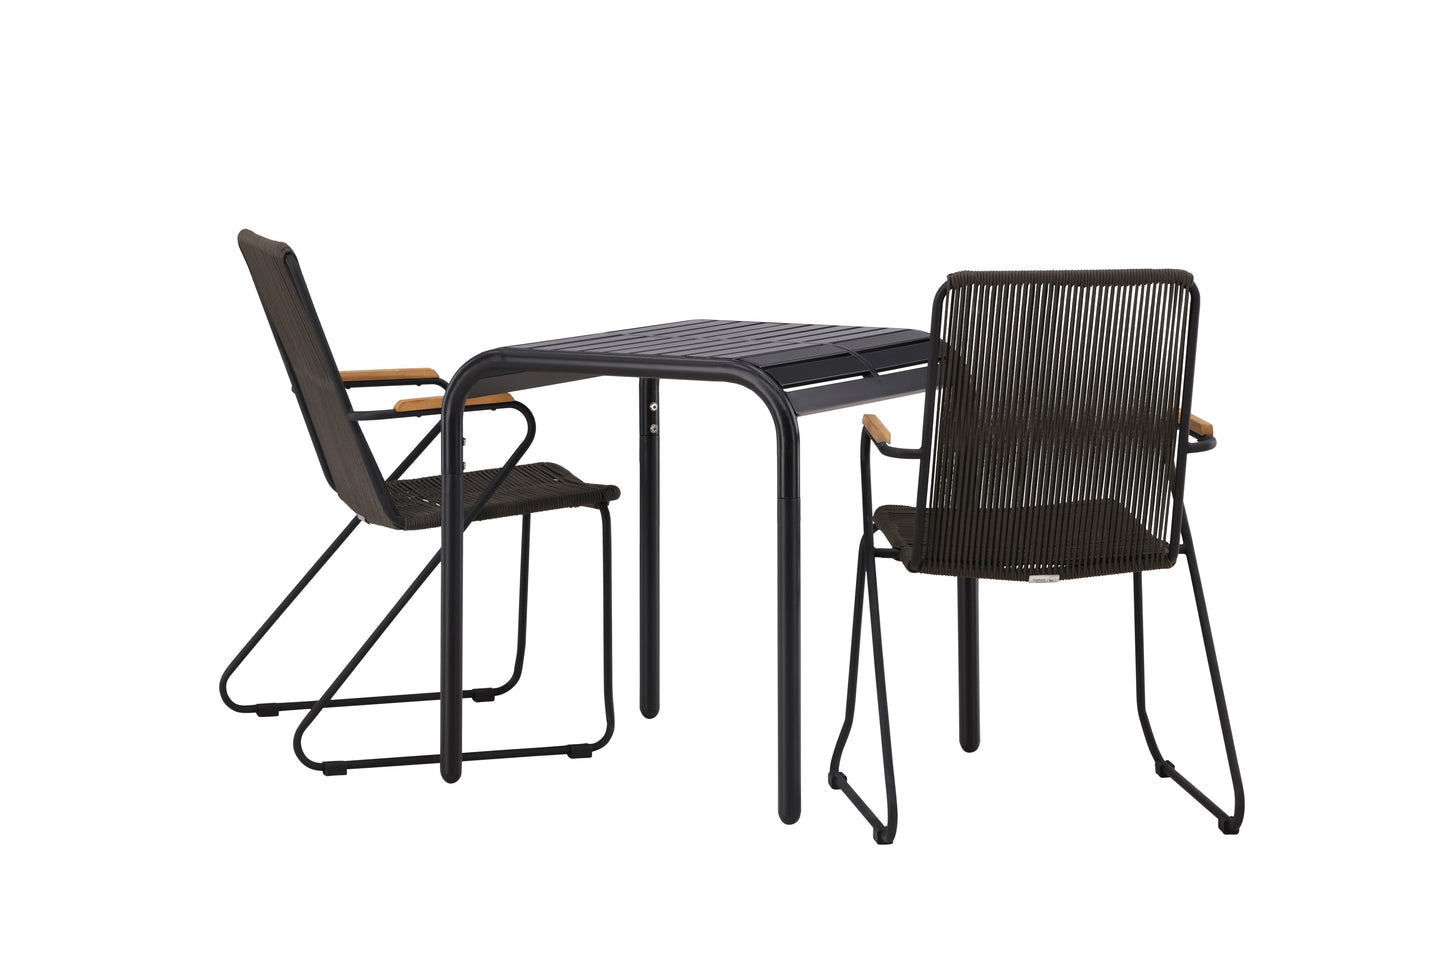 Borneo - Cafébord, Aluminium - Sort / Kvadrat 70*70* + Bois stol Stål - Sort / Mørkegråt Reb